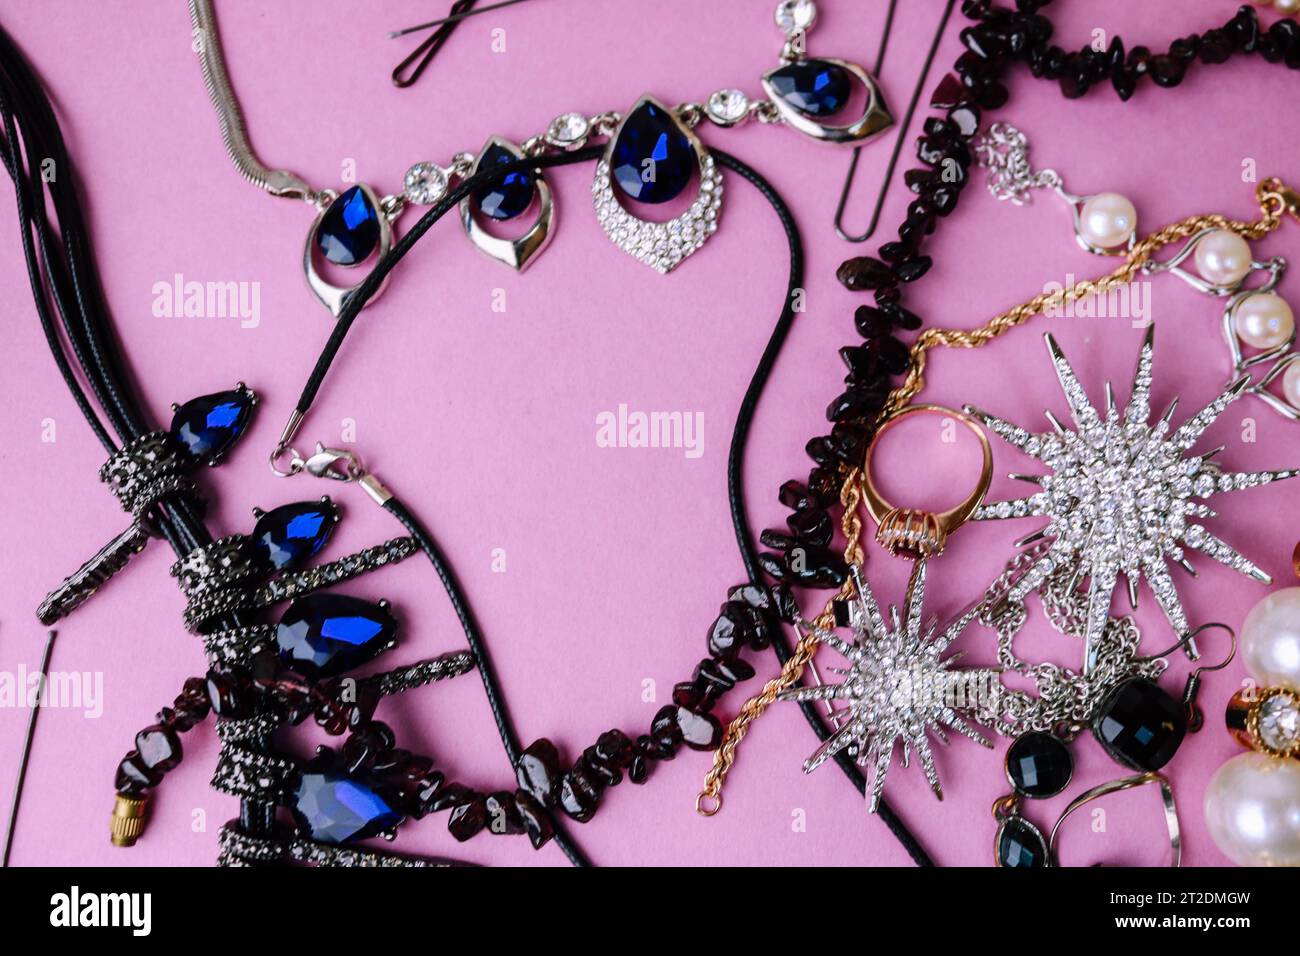 Bella gioielleria lucida e preziosa, elegante set di gioielli alla moda, collana, orecchini, anelli, catene, spilla con perle e diamanti su un viola rosa Foto Stock